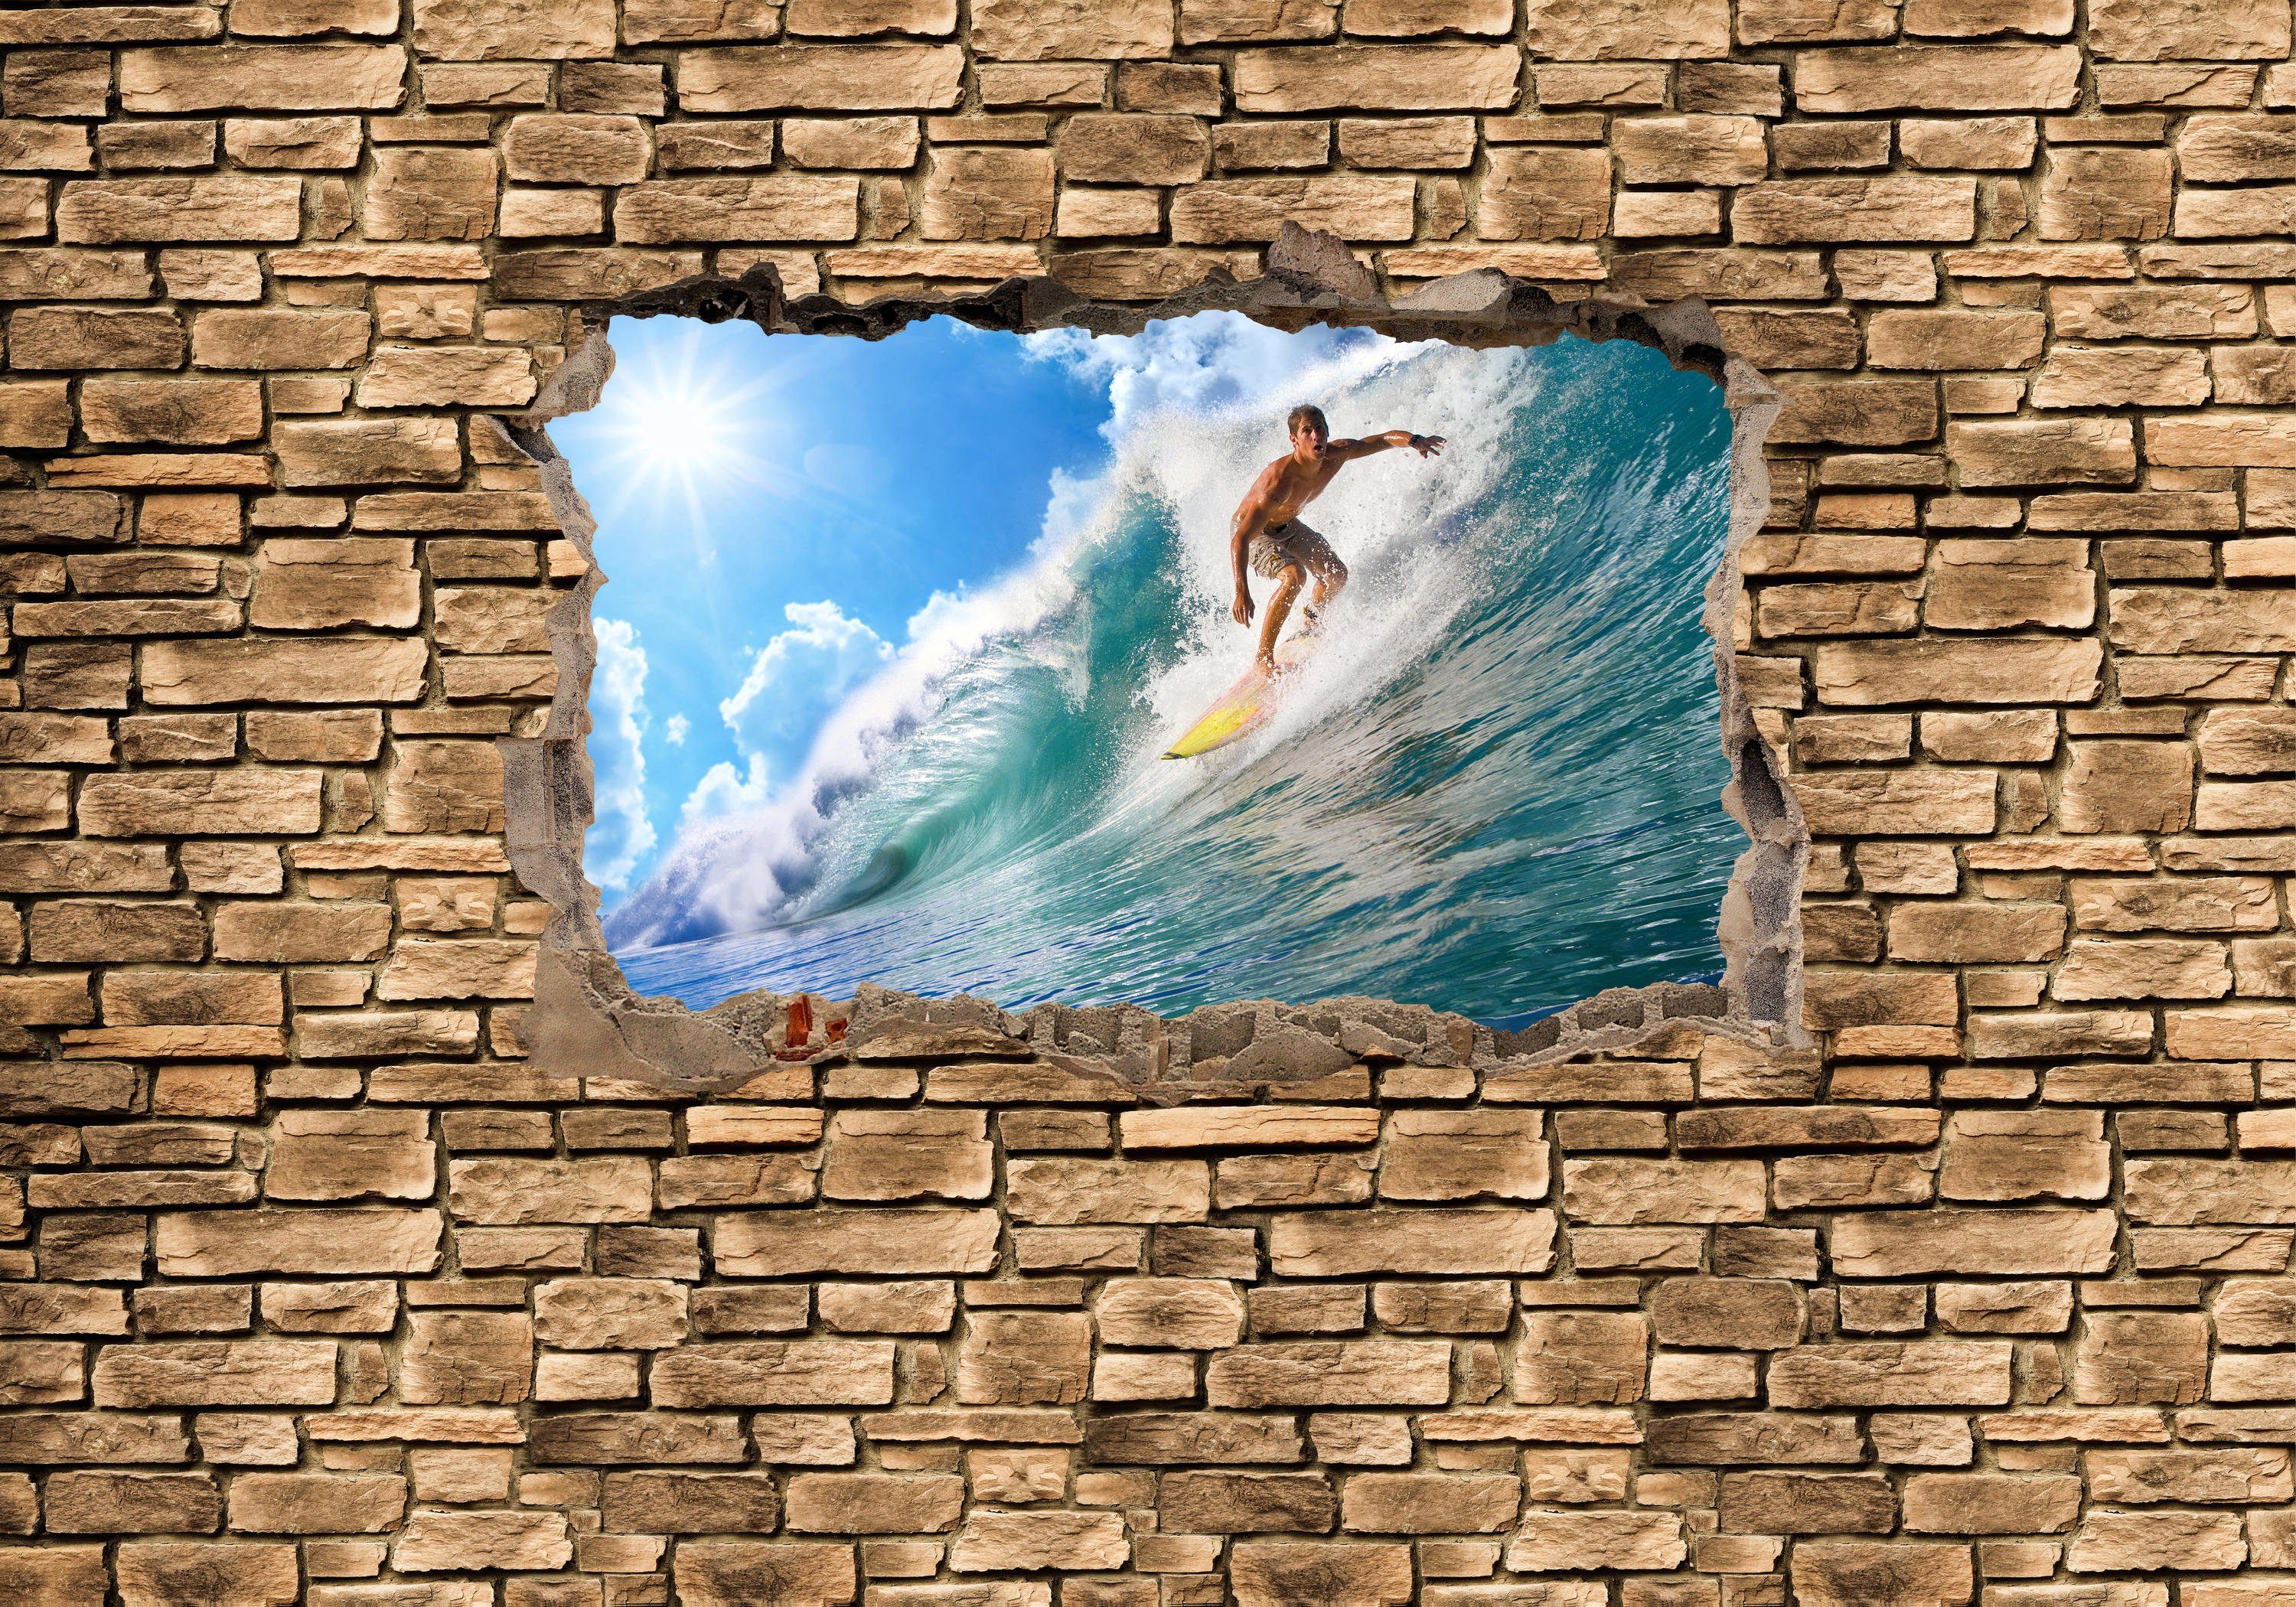 wandmotiv24 Fototapete 3D Surfing - Motivtapete, Wandtapete, Steinmauer, Vliestapete glatt, matt